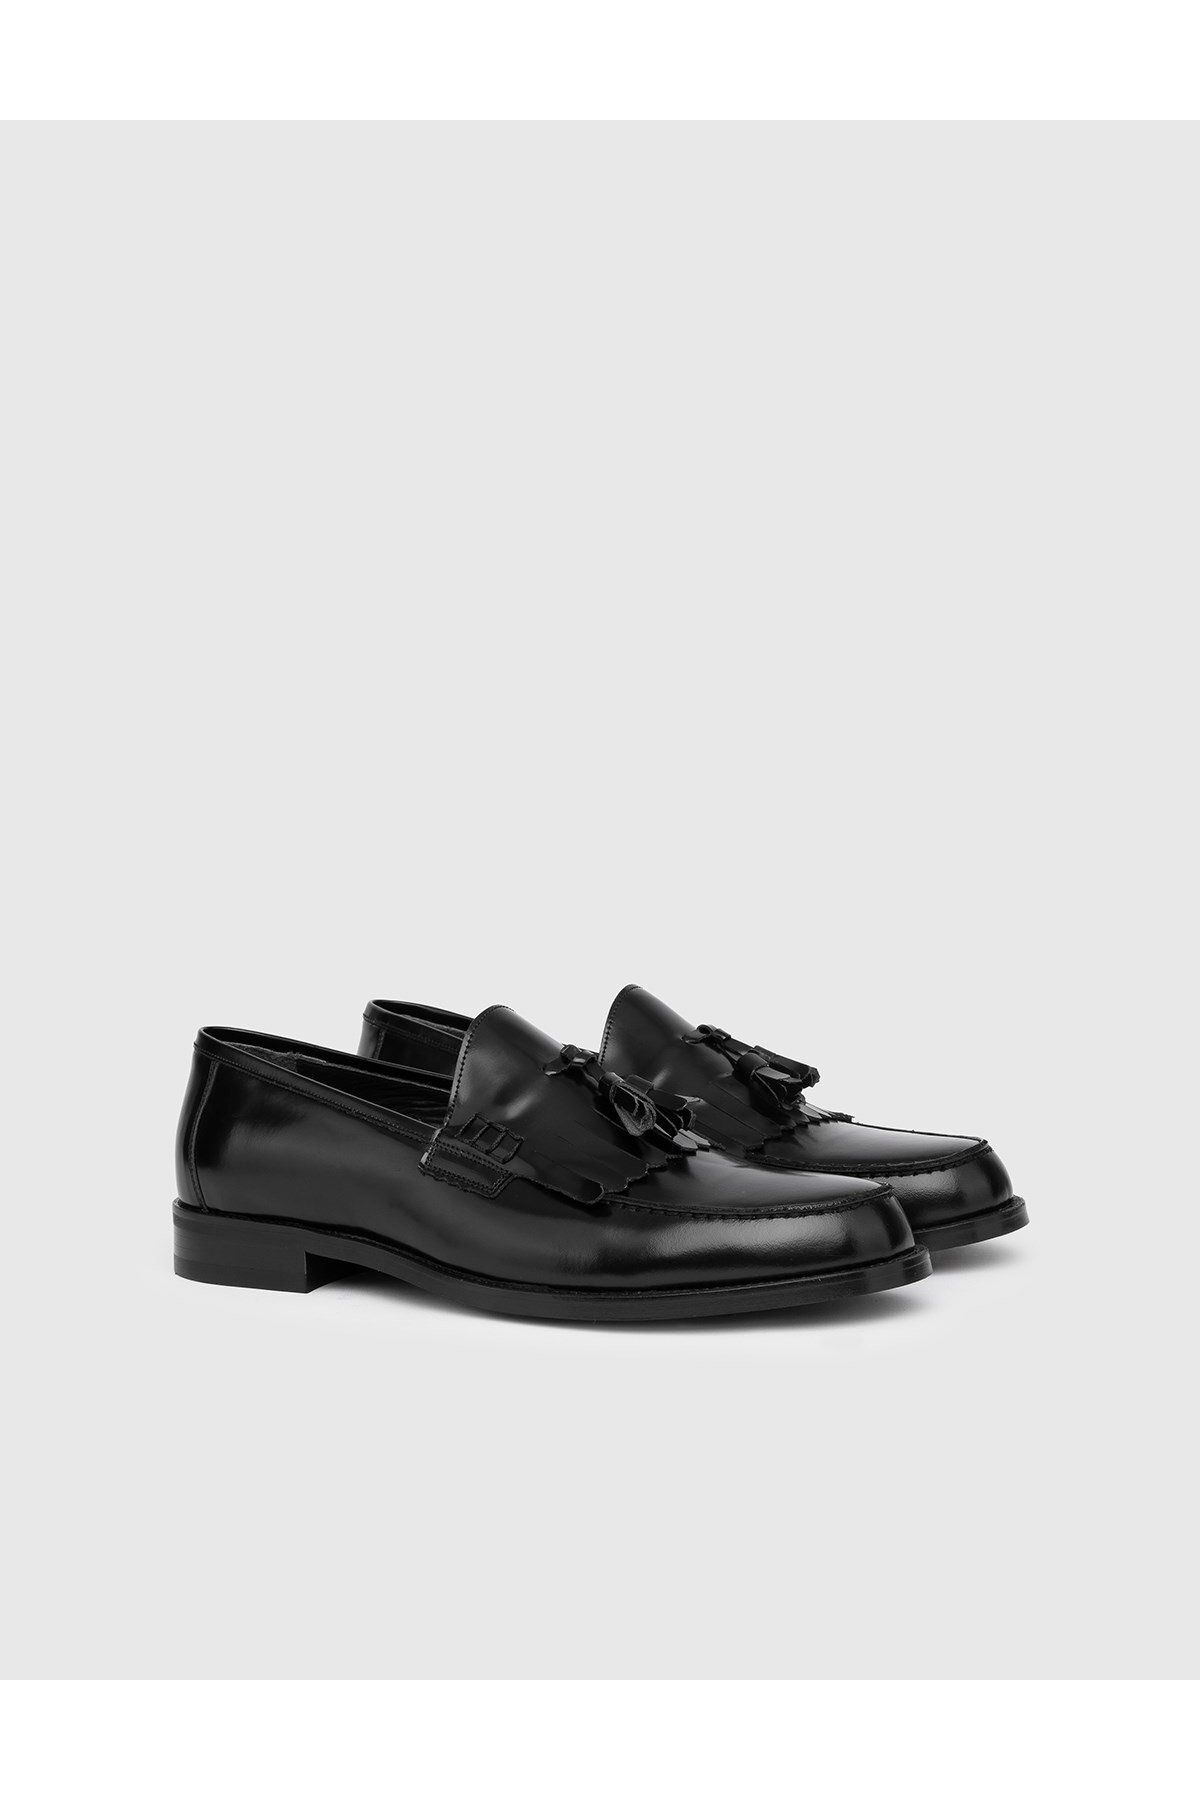 İlvi Tonje Hakiki Açma Deri Erkek Siyah Klasik Ayakkabı